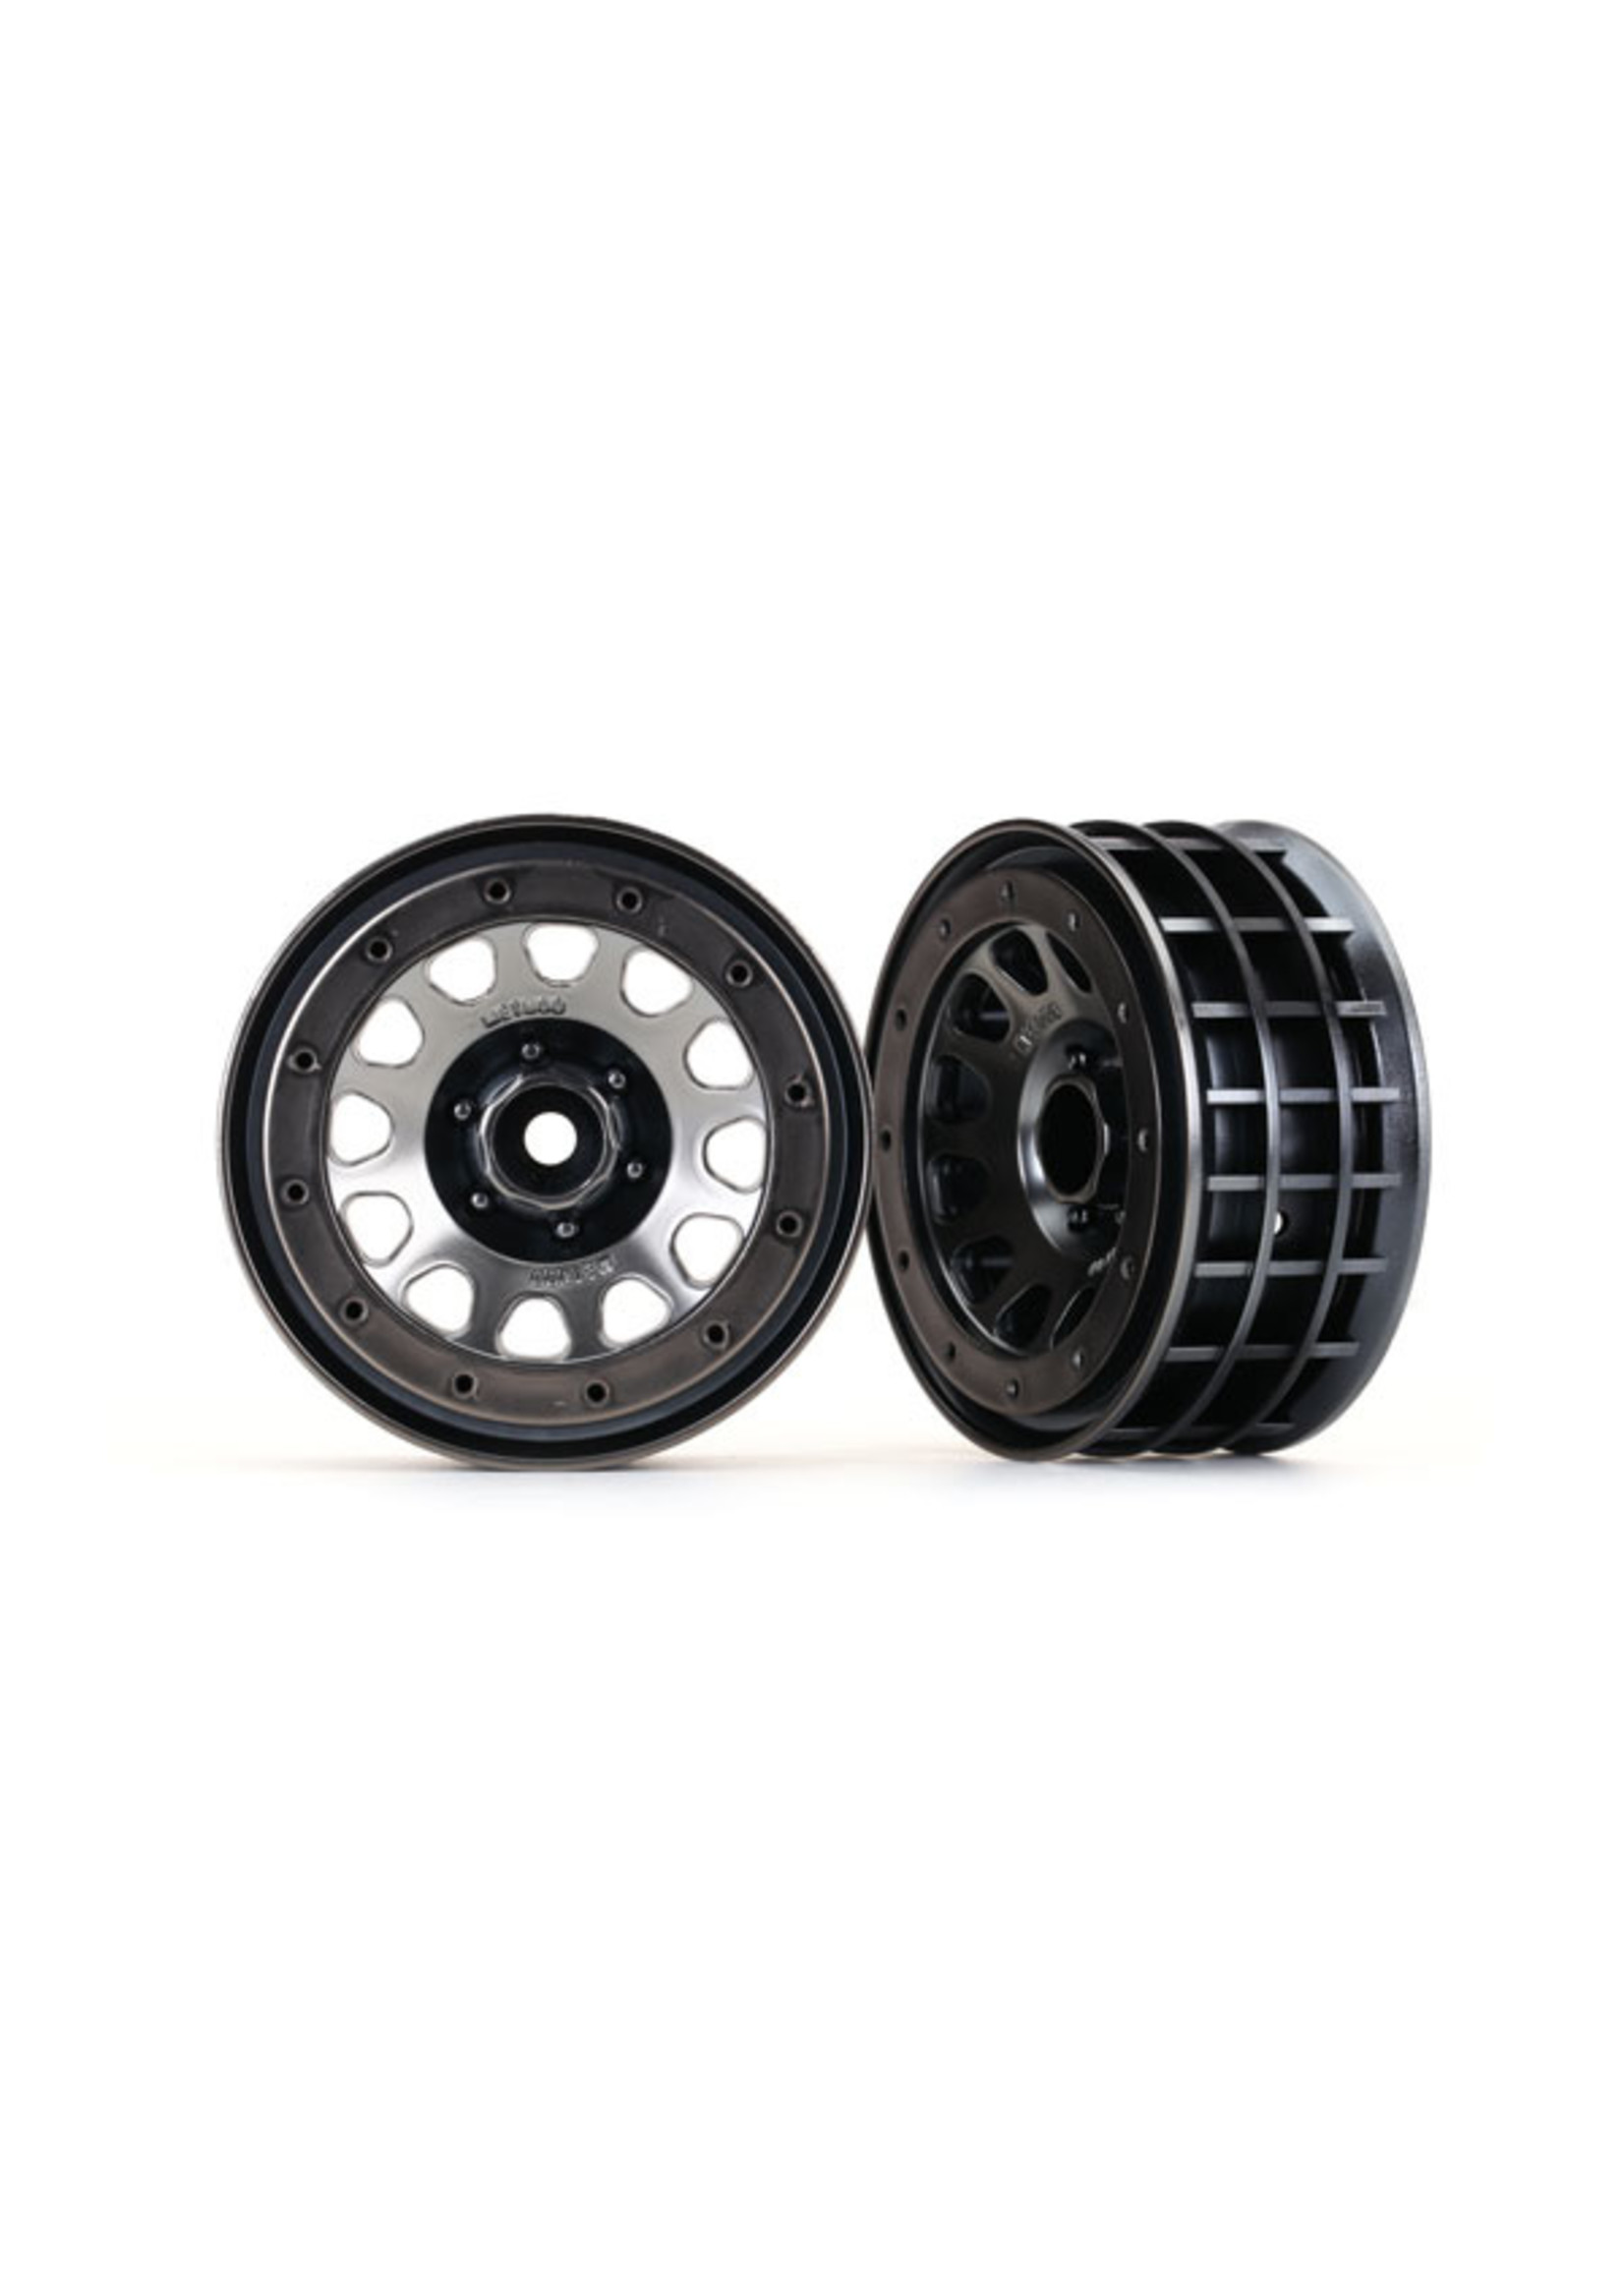 Traxxas 8171 - Method 105 2.2" Black Chrome Beadlock Wheels